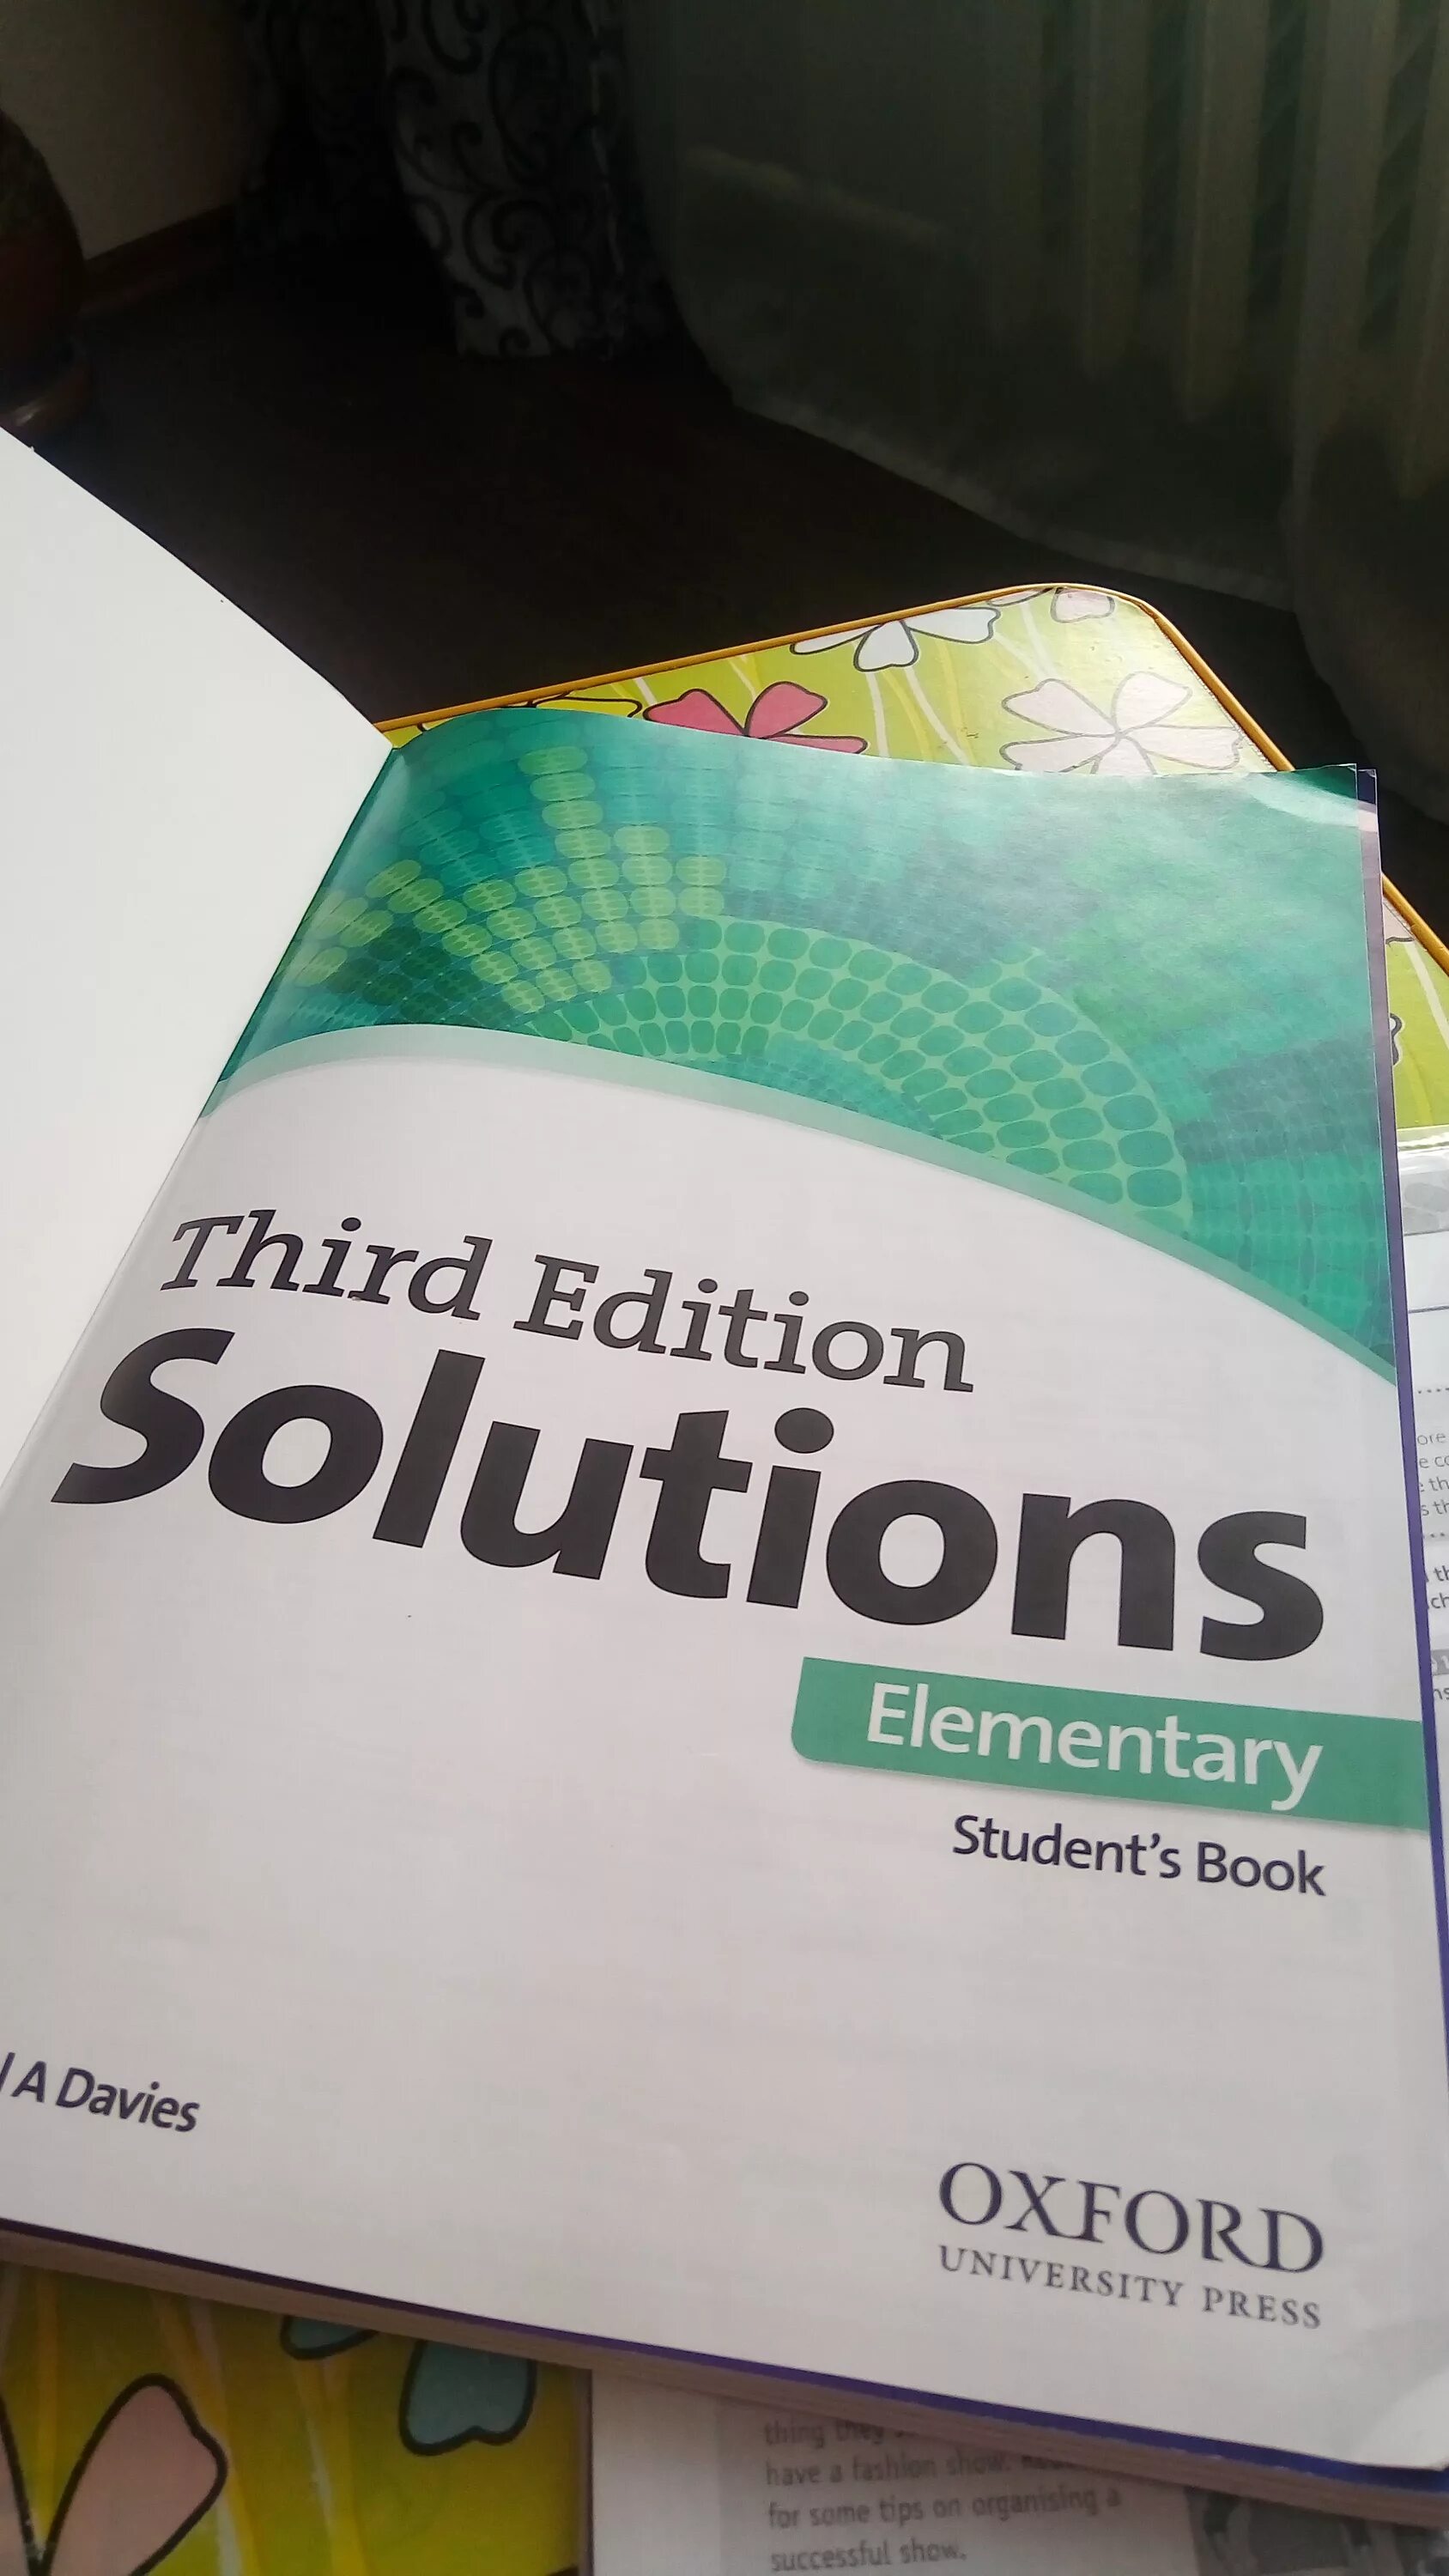 Solutions учебник. Учебник solutions Elementary. Учебник Солюшенс по английскому. Солюшнс элементари 3 издание.